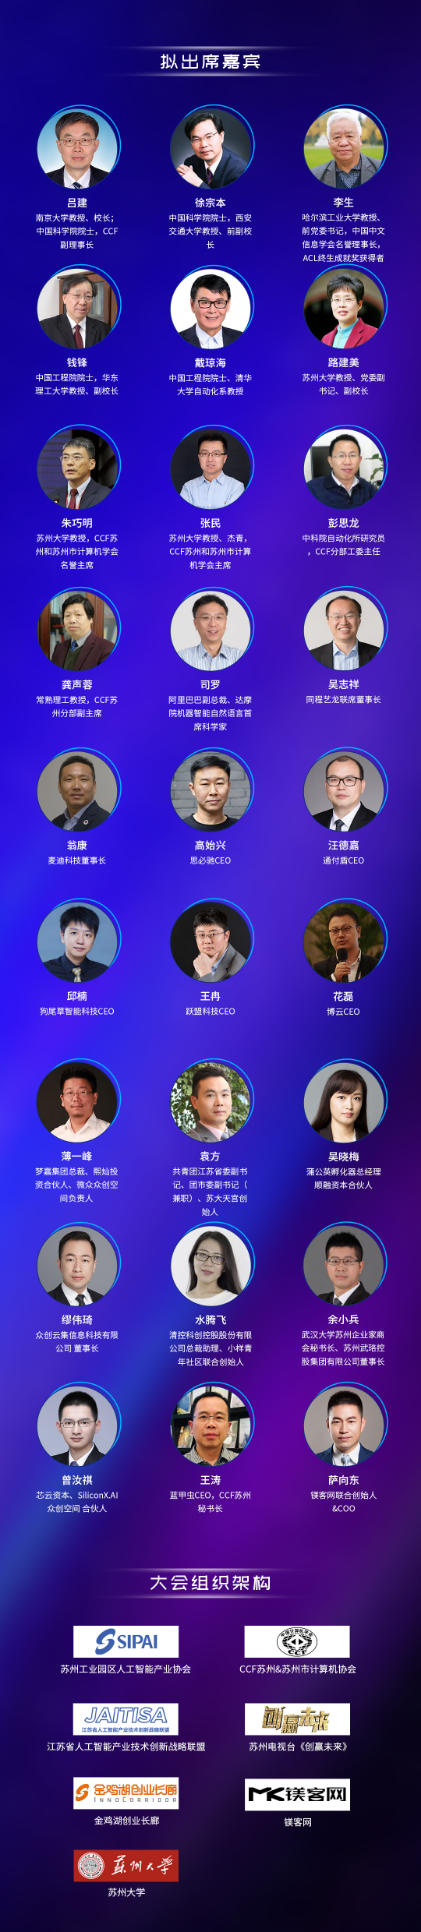 2019苏州市计算机大会暨第五届荣耀金鸡湖颁奖盛典